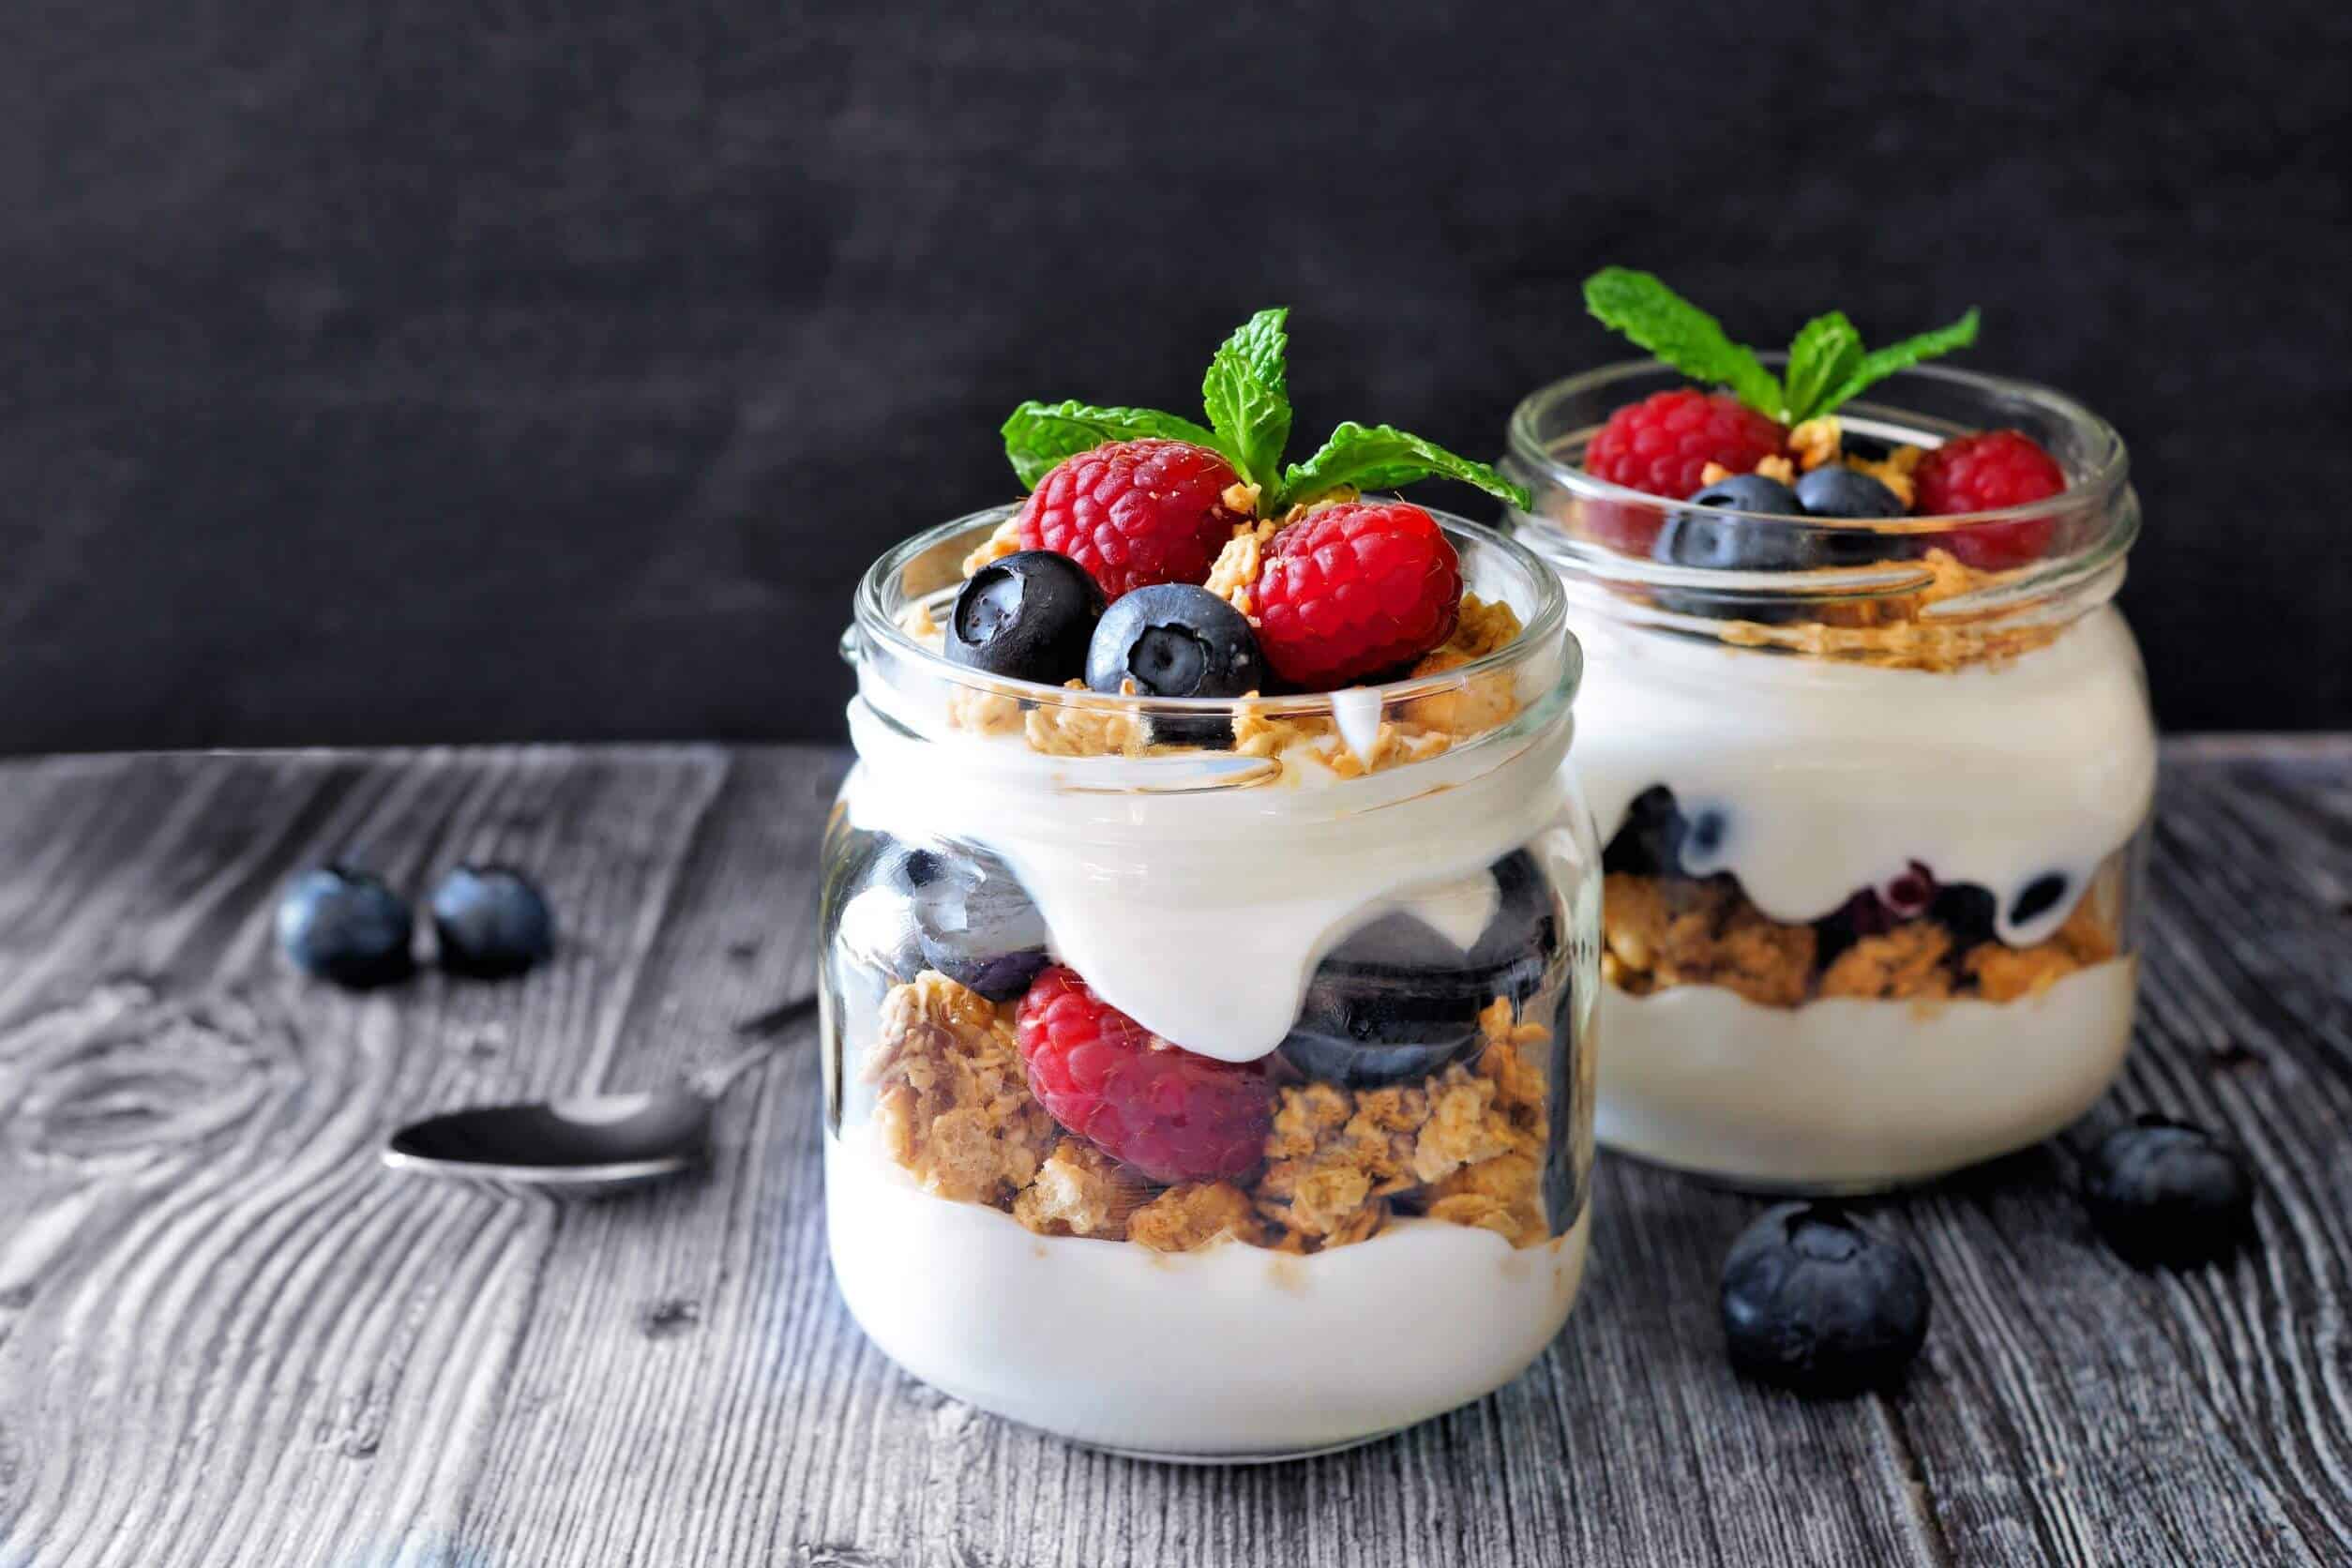 Descubre las 5 MEJORES marcas de yogur sin lactosa que cambiarán tu vida!